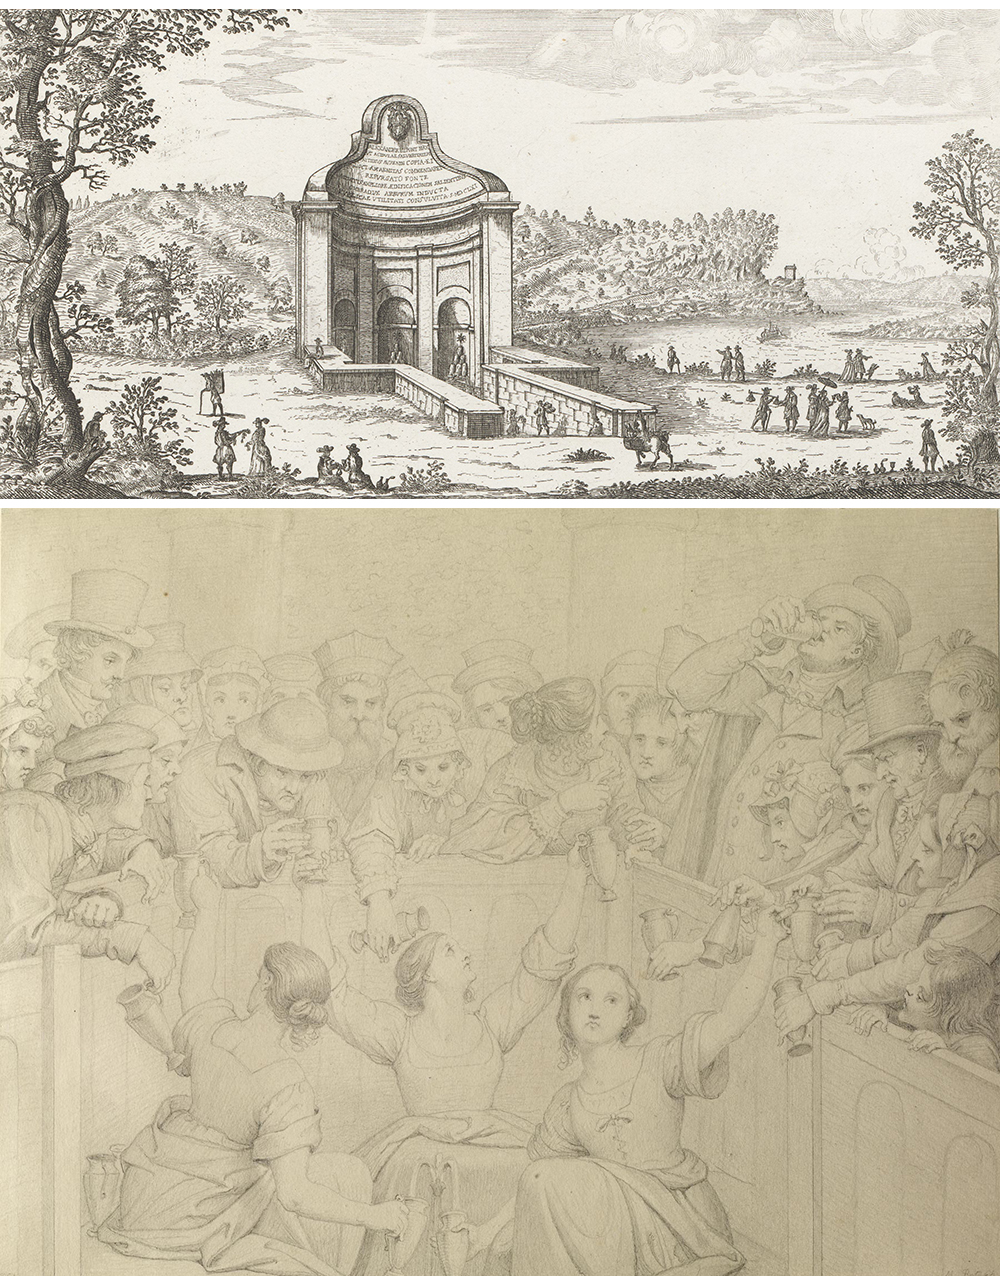 Top: The Fontana dell’Acqua Acetosa in Rome, by Giovanni Battista Falda, 1665. Bottom: Scene at Spa, by Moritz Retzsch, 1851.